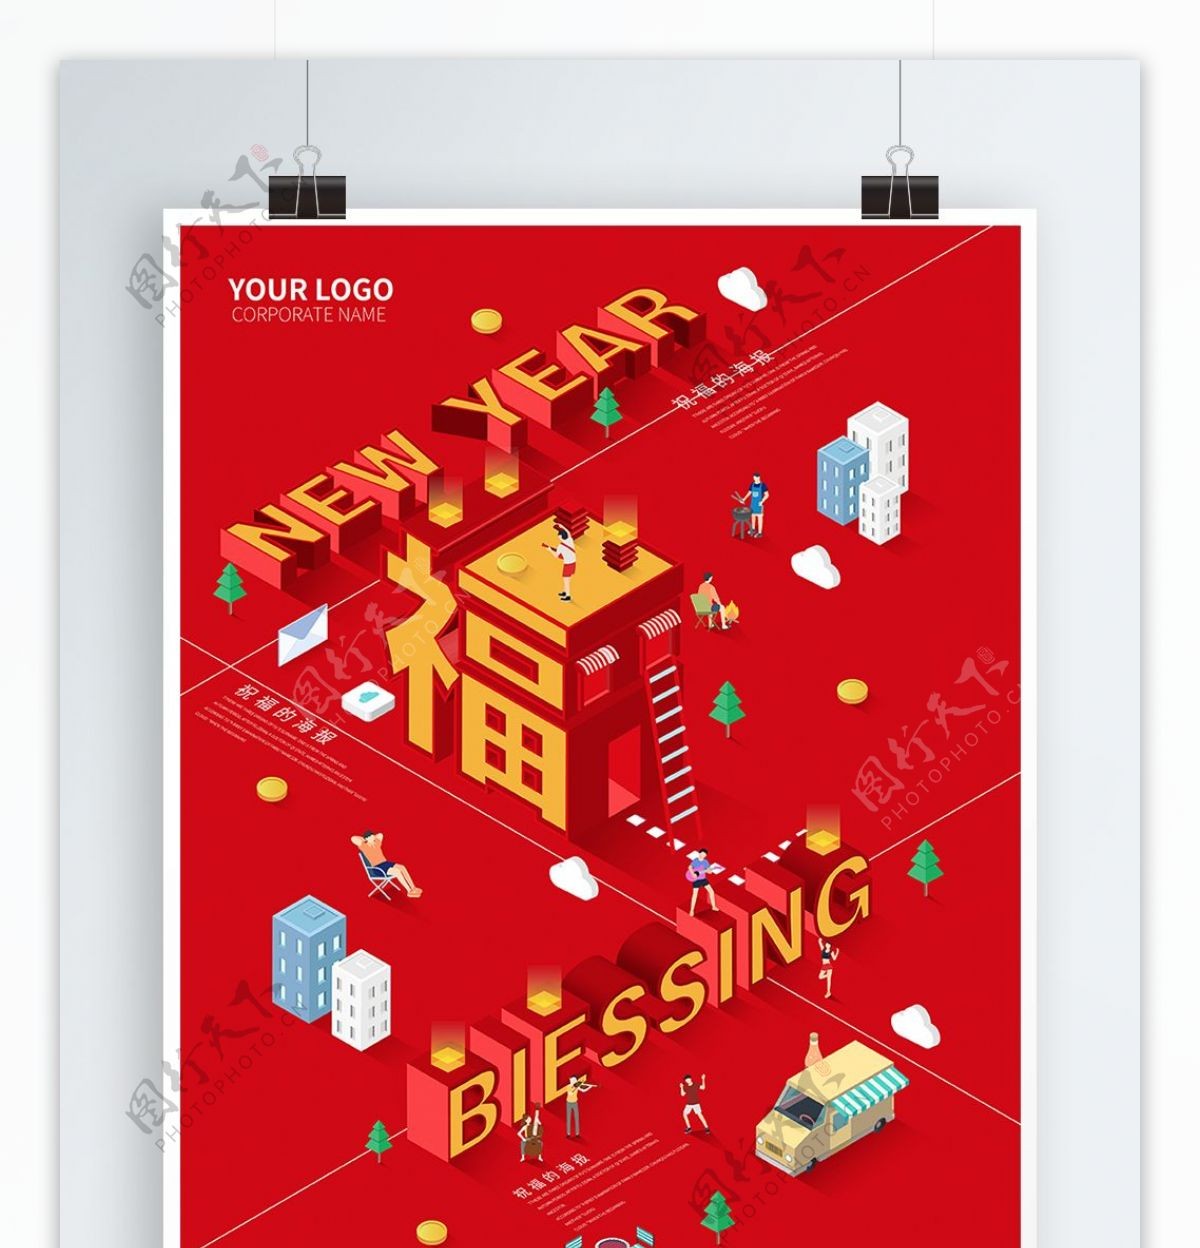 原创2.5D创意红色新年福字海报模版下载